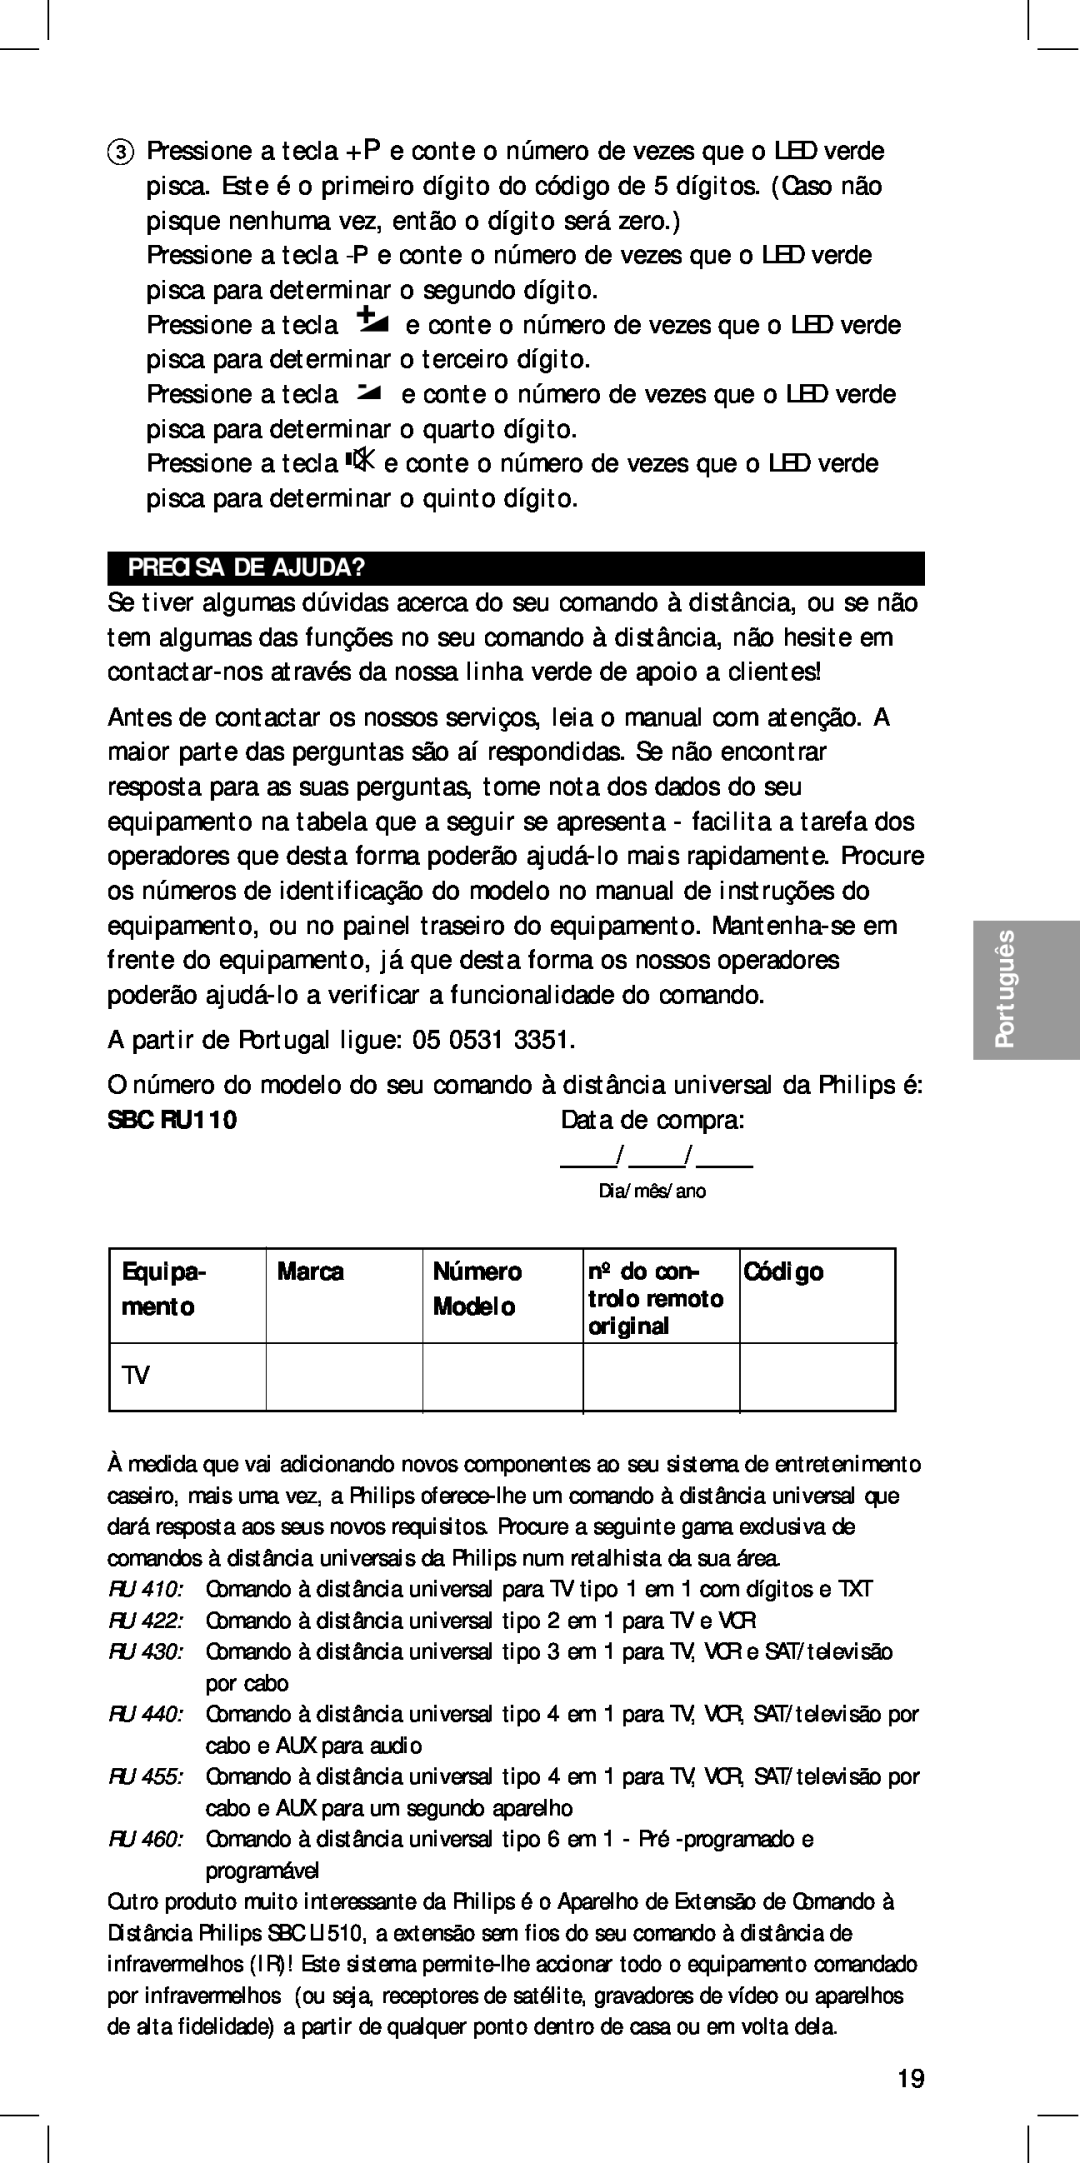 Philips MC-110 manual Precisa De Ajuda?, Equipa, mento, Modelo, SBC RU110, Marca, Código, Português 